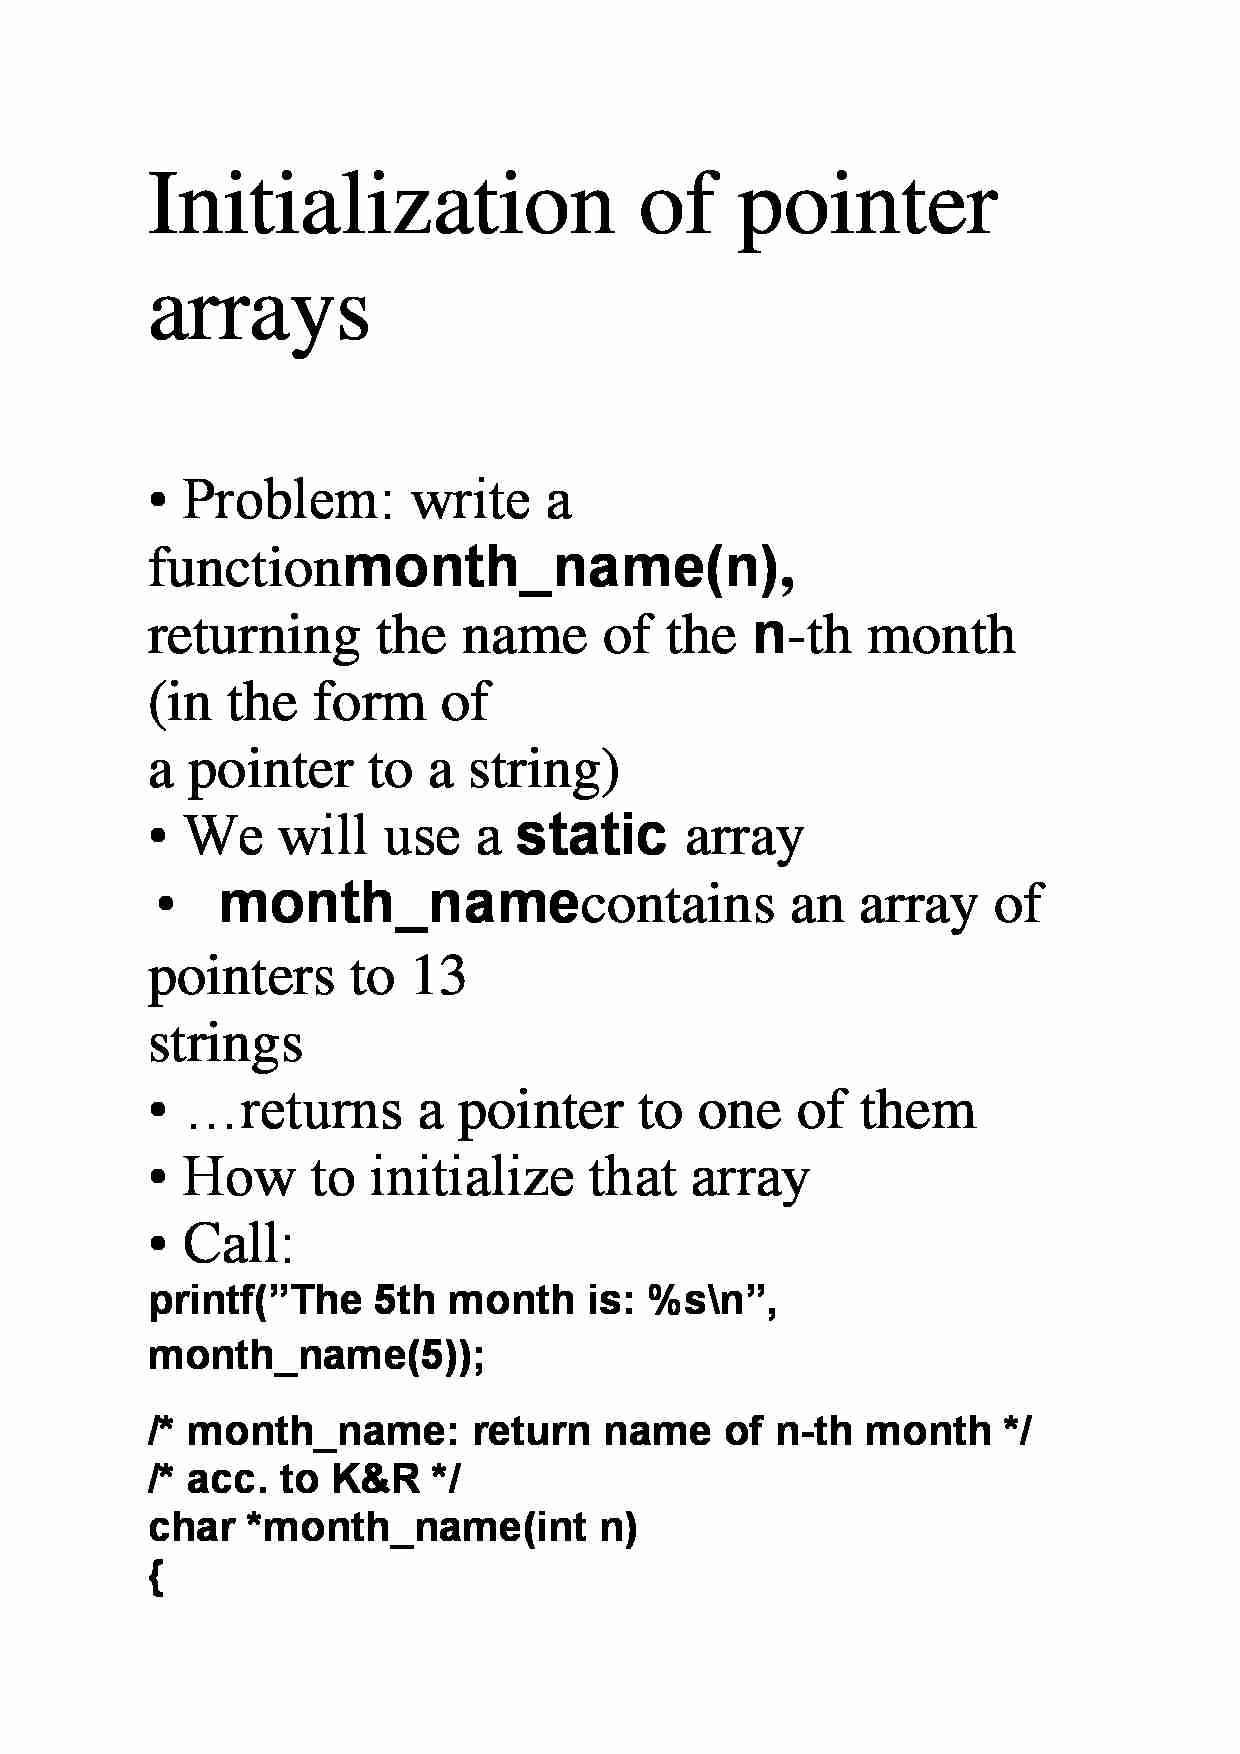 Initialization of pointer arrays - strona 1